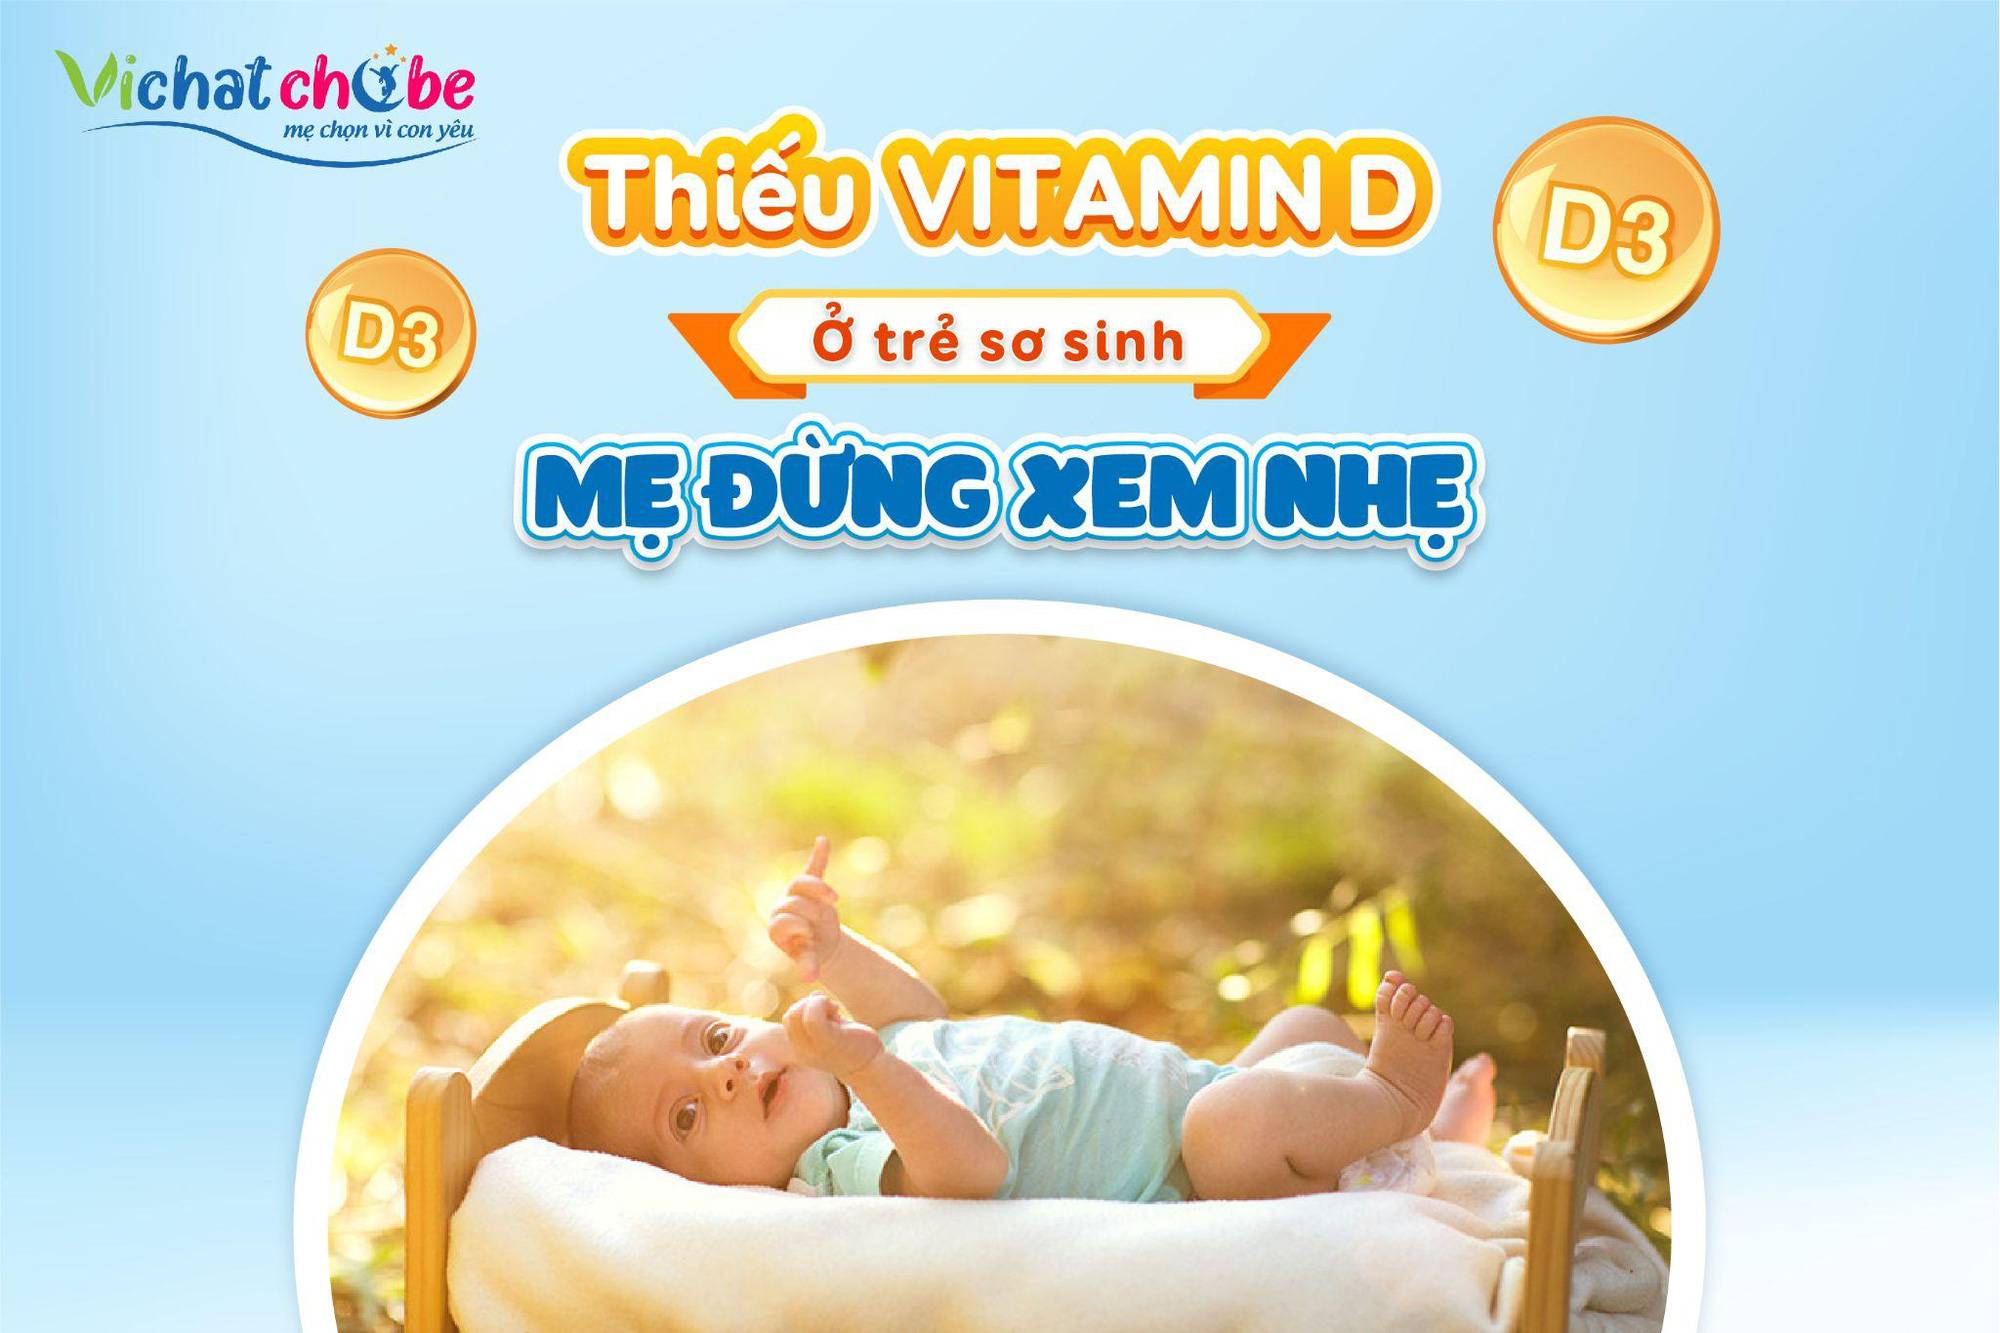 Thiếu vitamin D ở trẻ sơ sinh: Mẹ đừng xem nhẹ! - Ảnh 1.